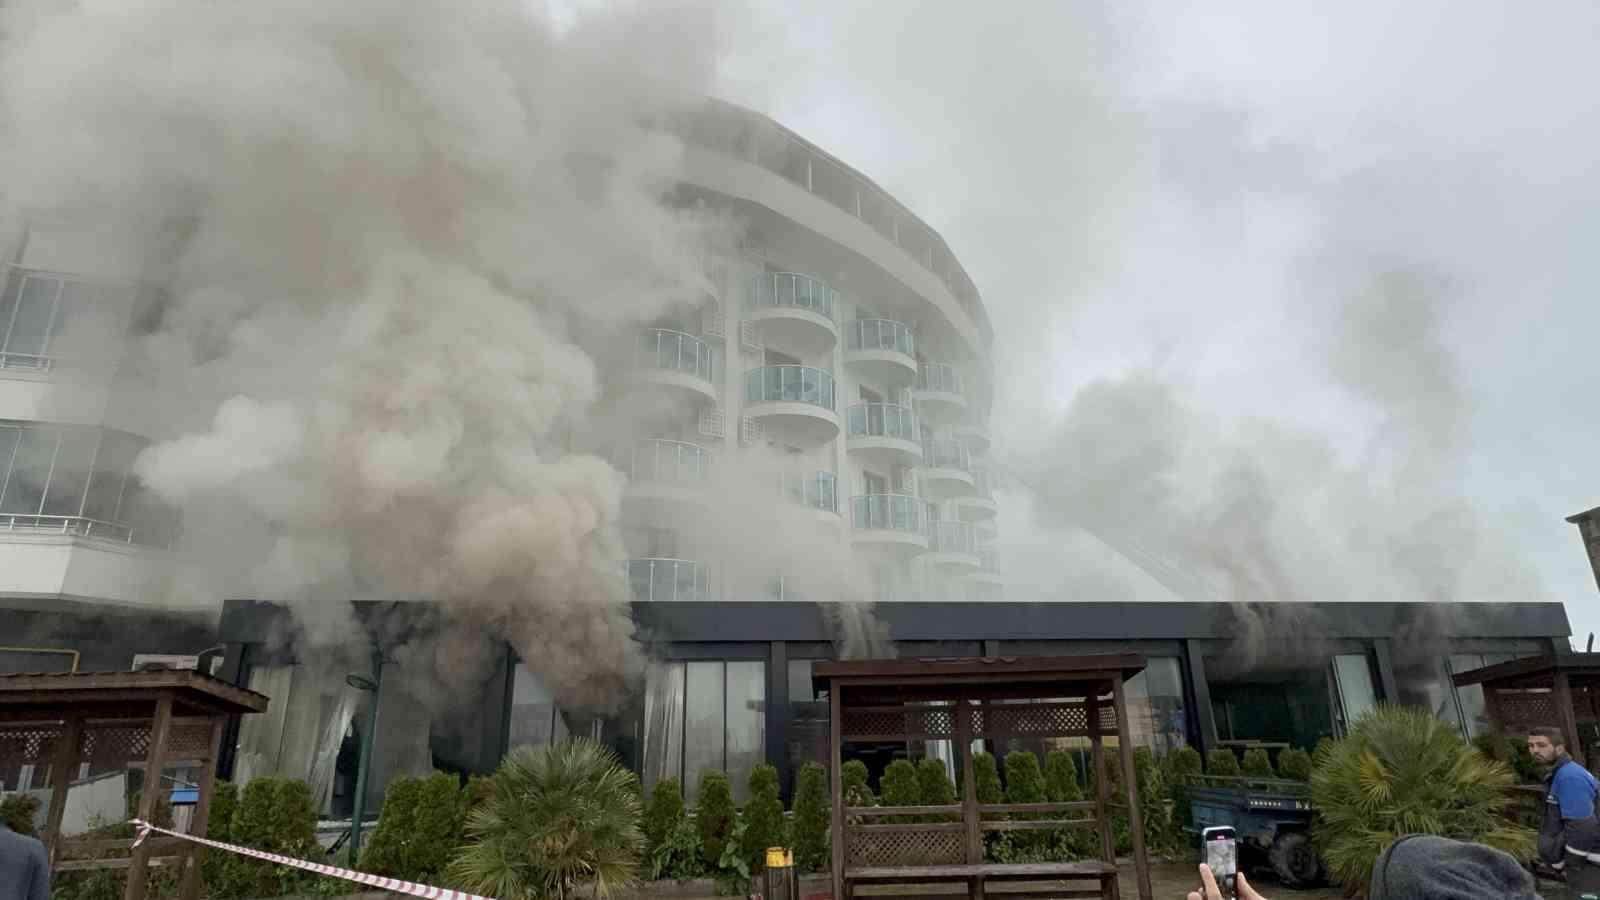 düzce’de otelde yangın: 3 kişi dumandan etkilendi